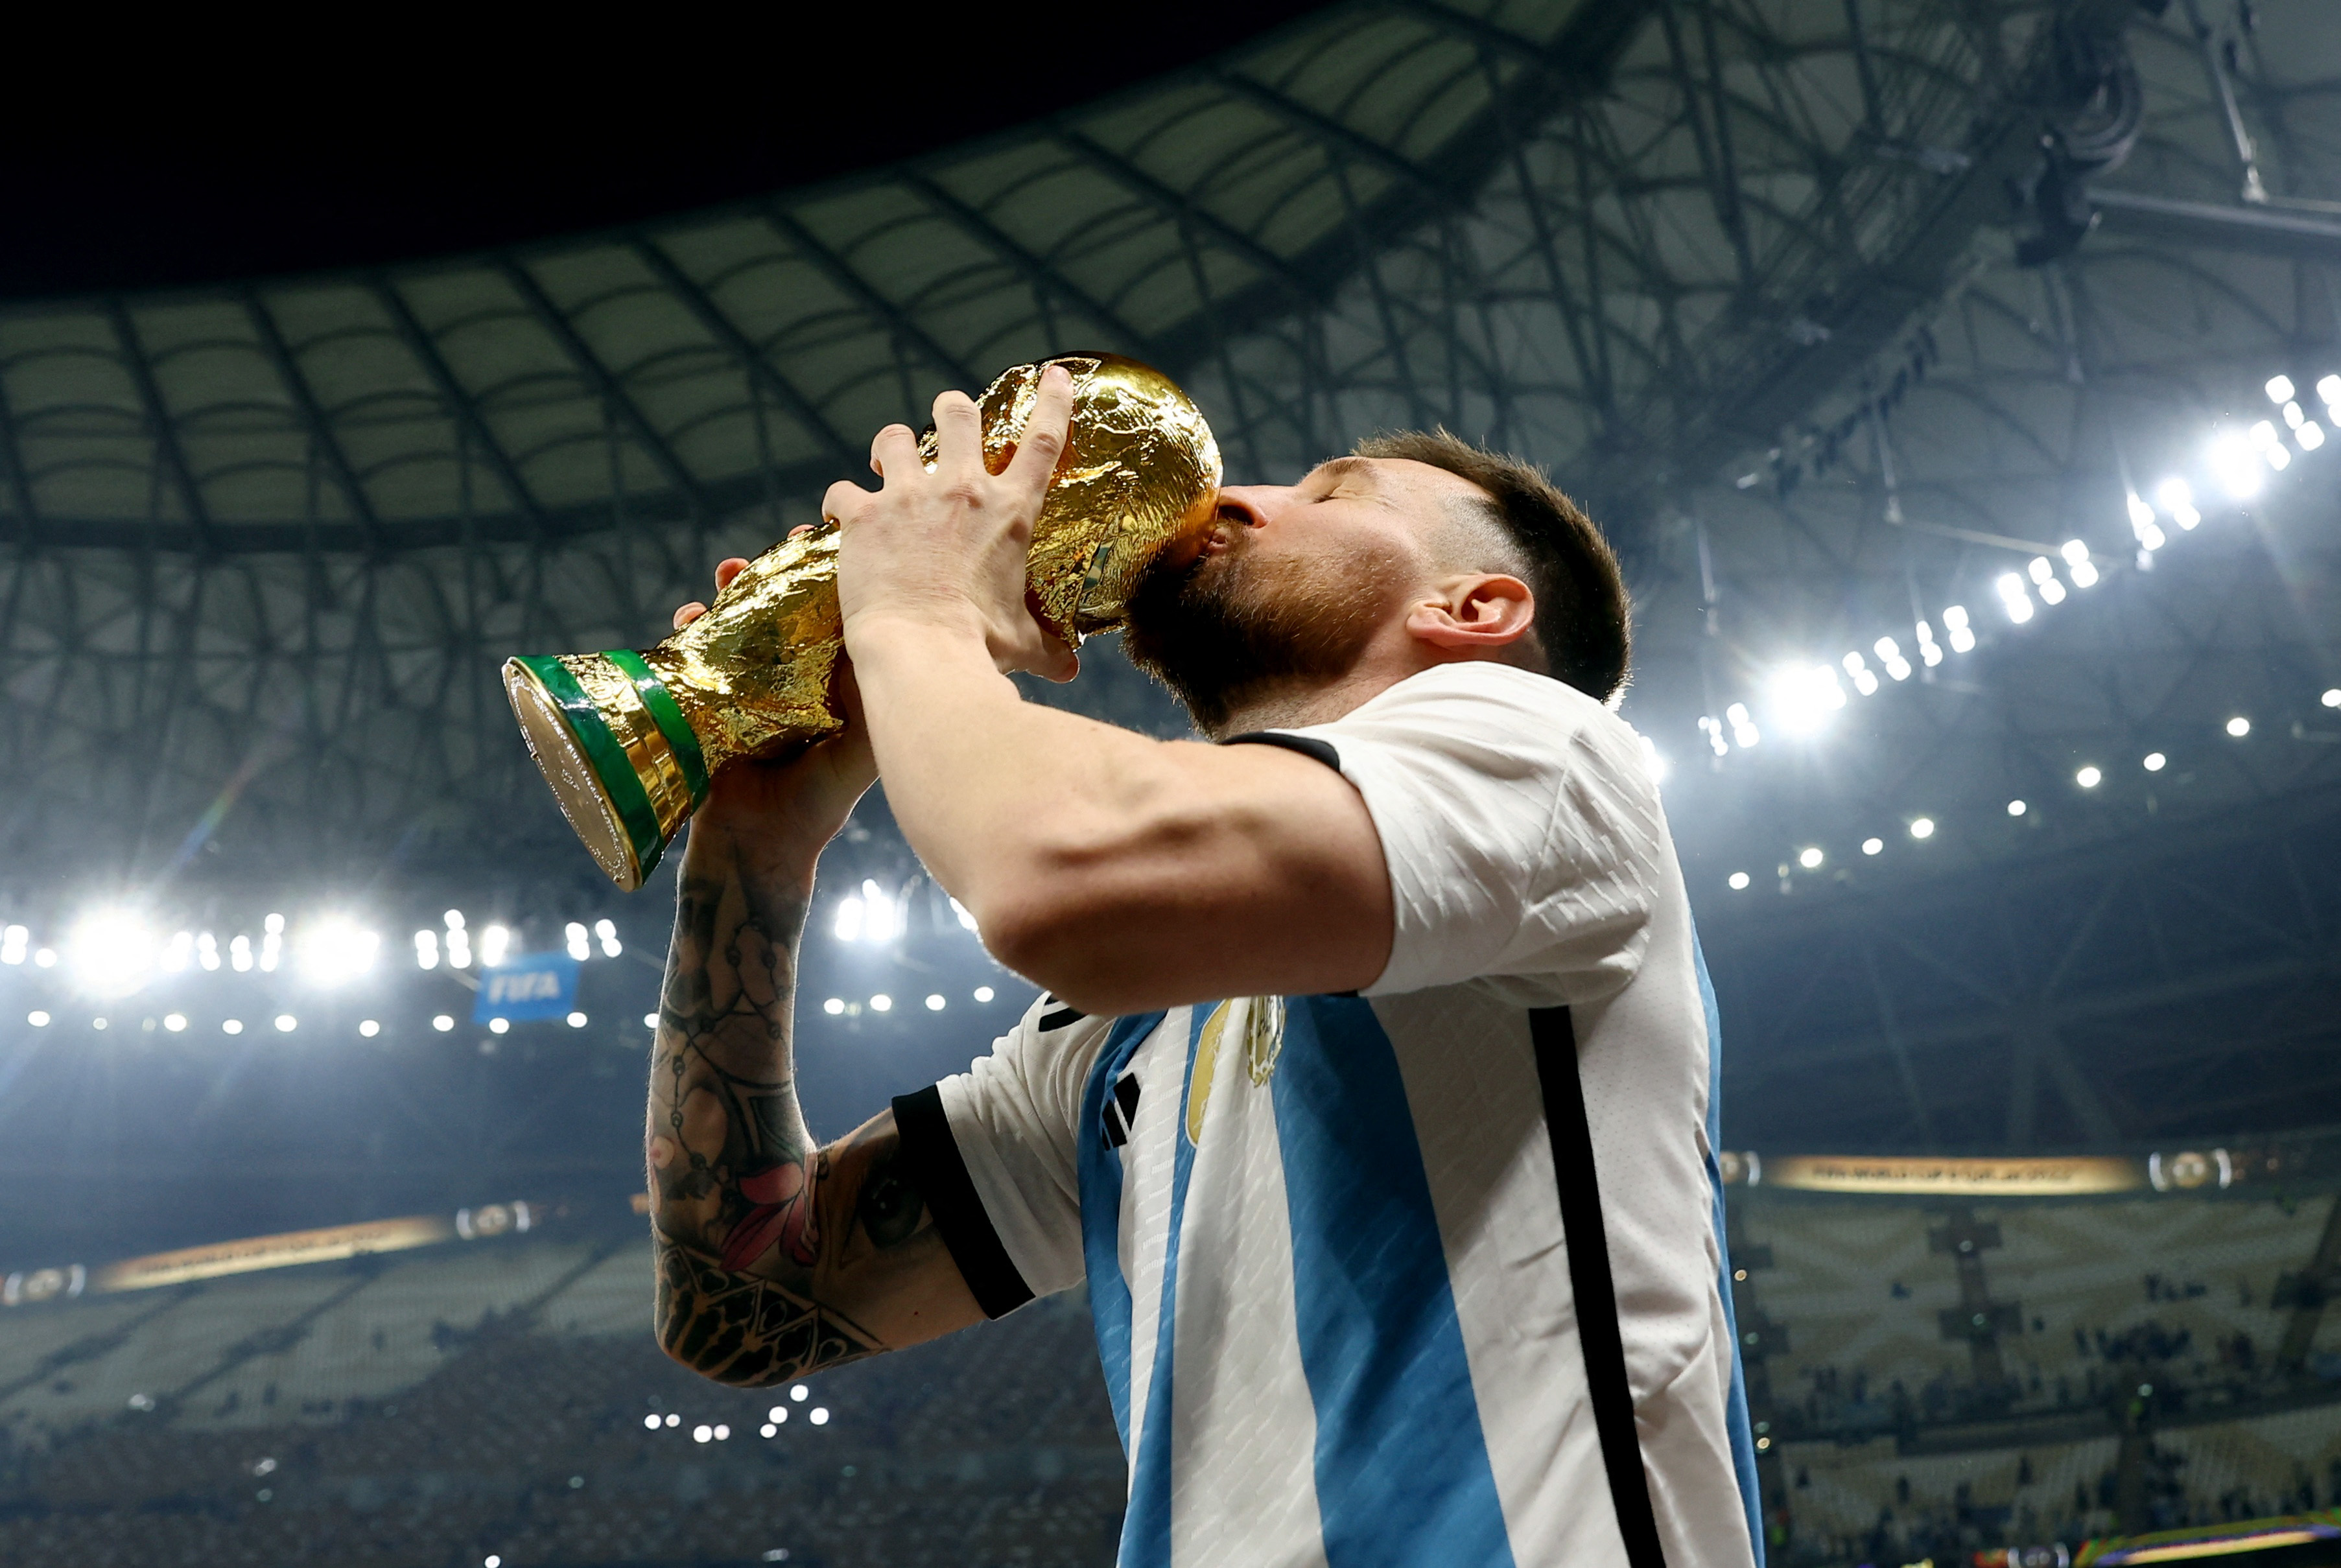 Messi anunció que seguirá jugando en la selección argentina después de ganar el Mundial: “Quiero disfrutar unos partidos siendo campeón del mundo” - Infobae